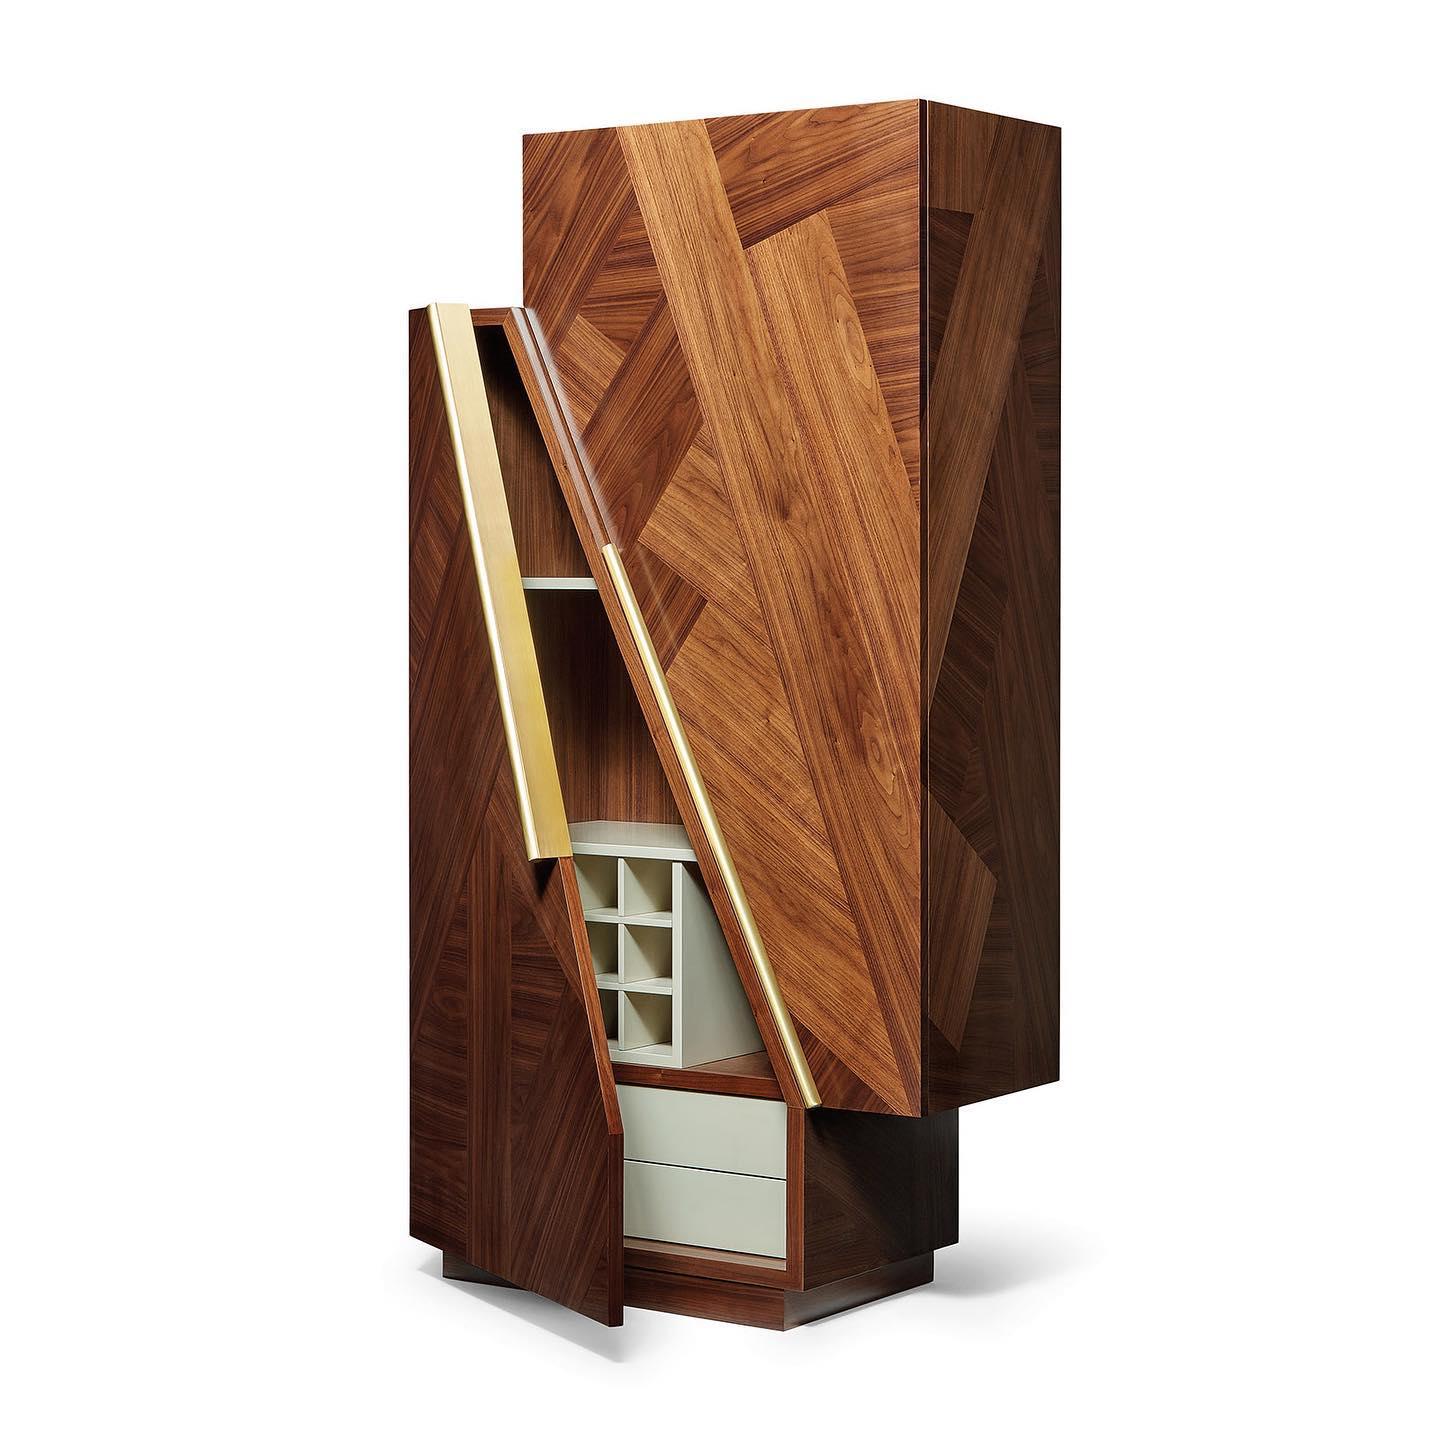 Ce cabinet de bar est une contemplation des polarités dans la Nature. La marqueterie de bois sert d'encadrement à deux grandes portes, dont l'intérieur est conçu et réalisé pour accueillir des verres et des bouteilles.
Corps : Noyer